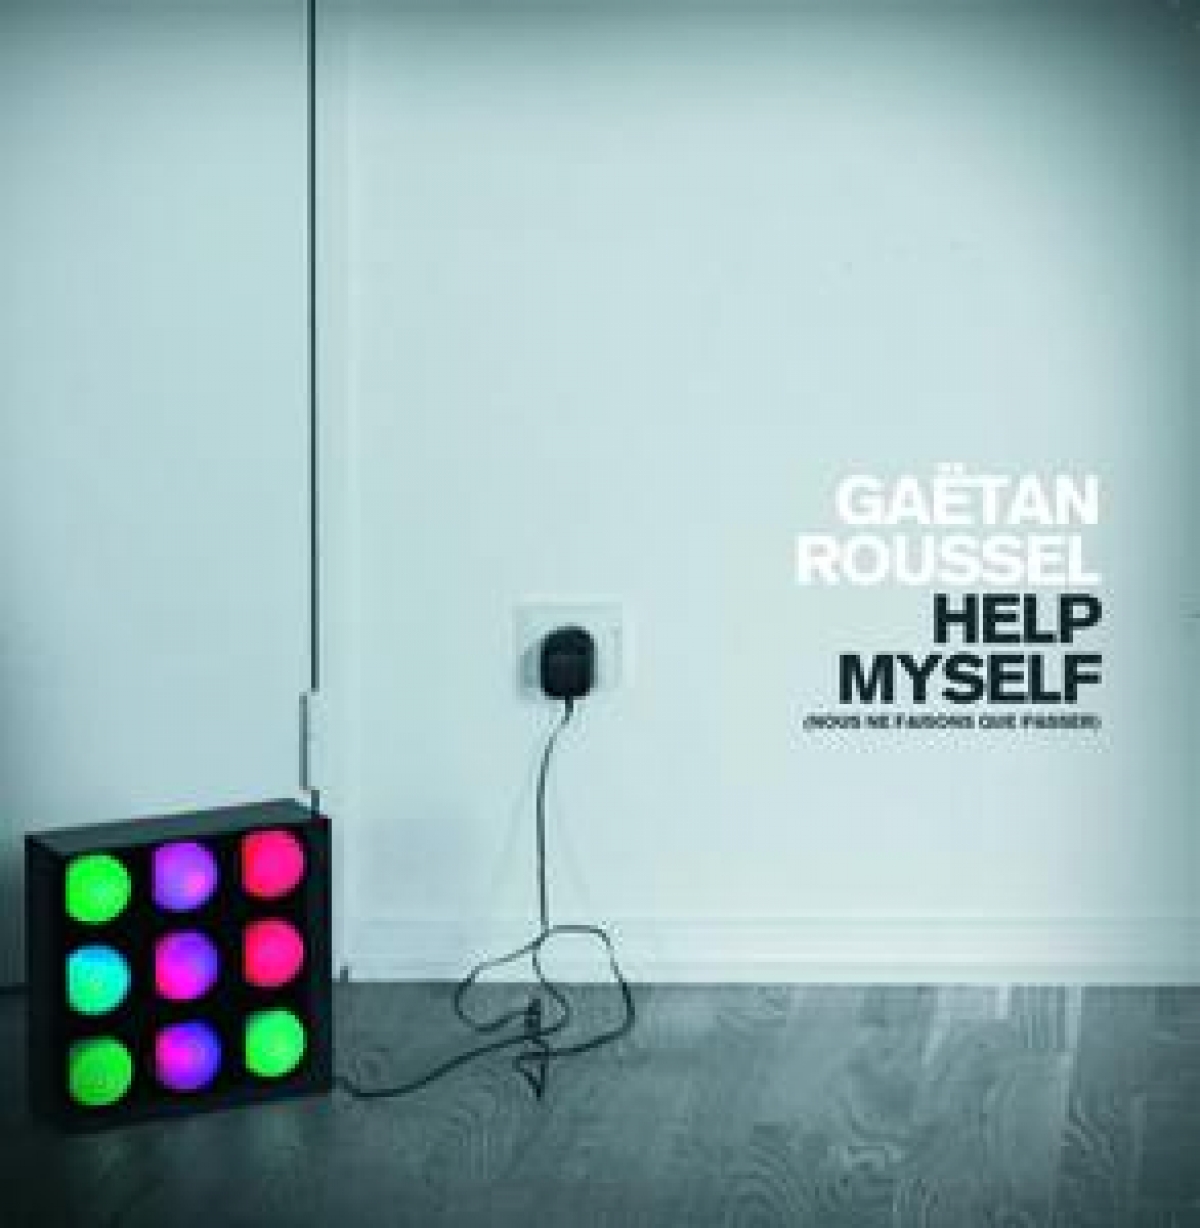 GAETAN ROUSSEL - Help Myself (Nous Ne Faisons Que Passer)